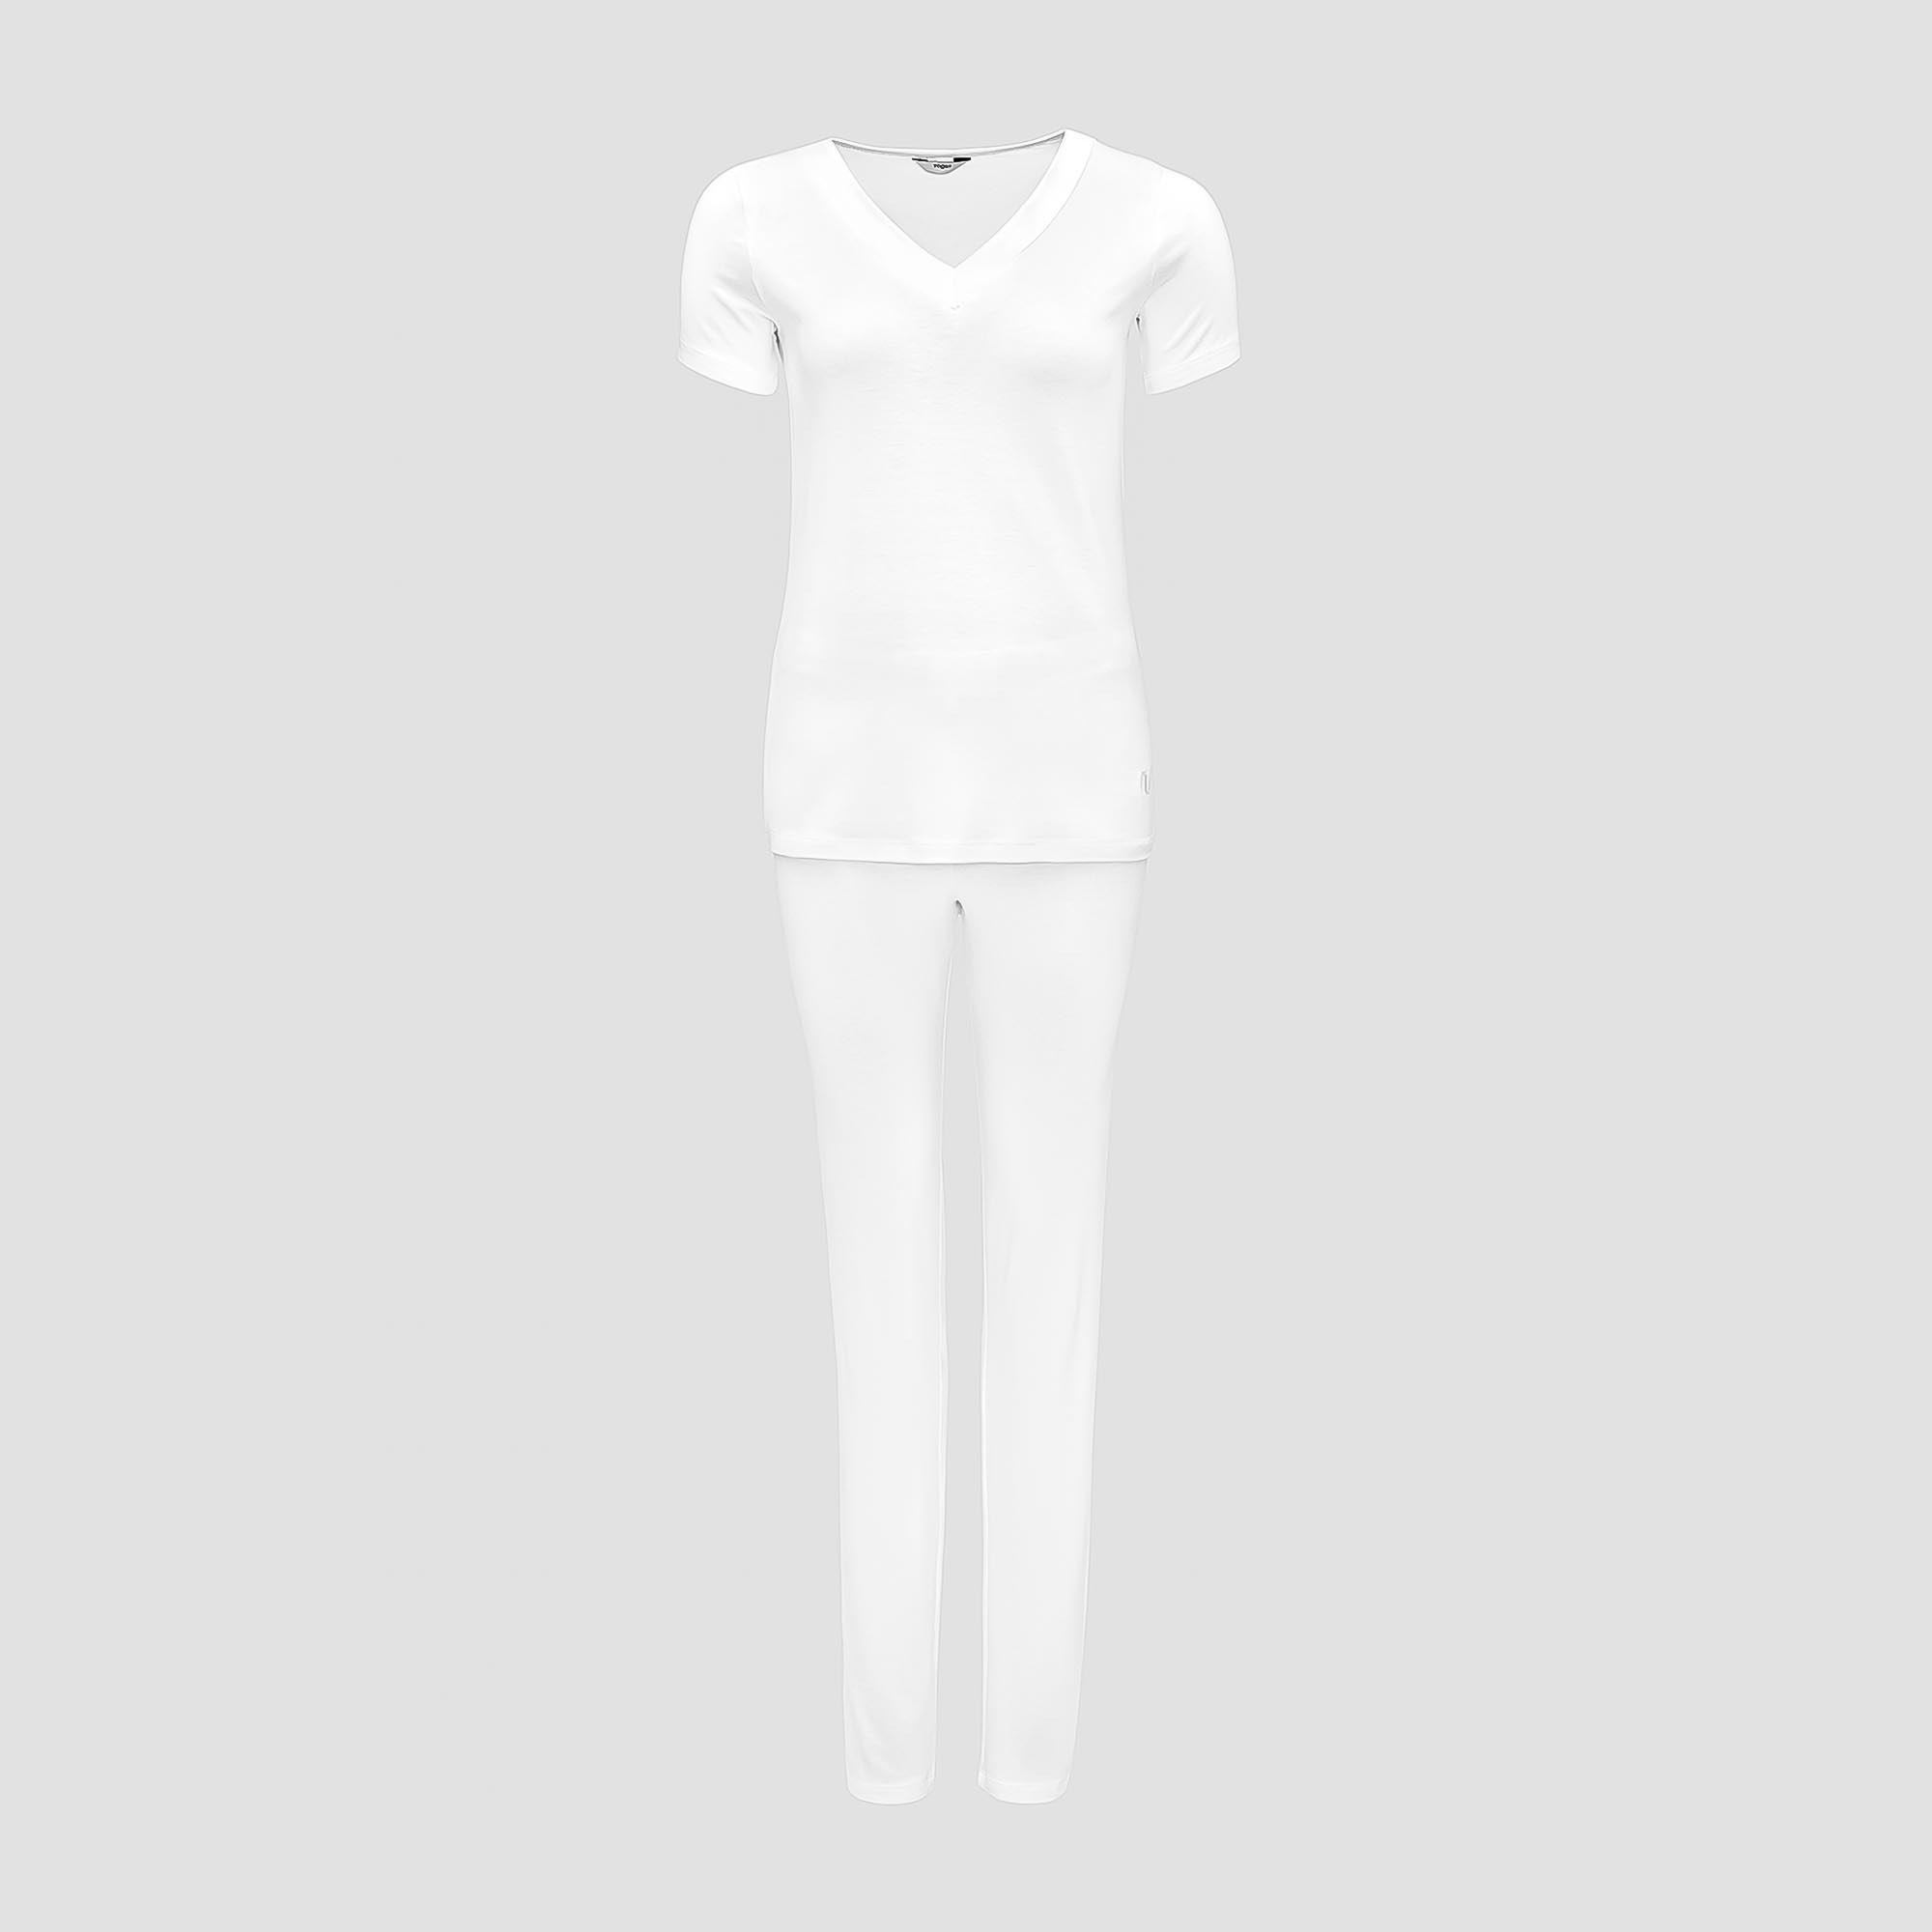 Пижама Togas Ингелла белая женская M(46) 2 предмета пижама брюки